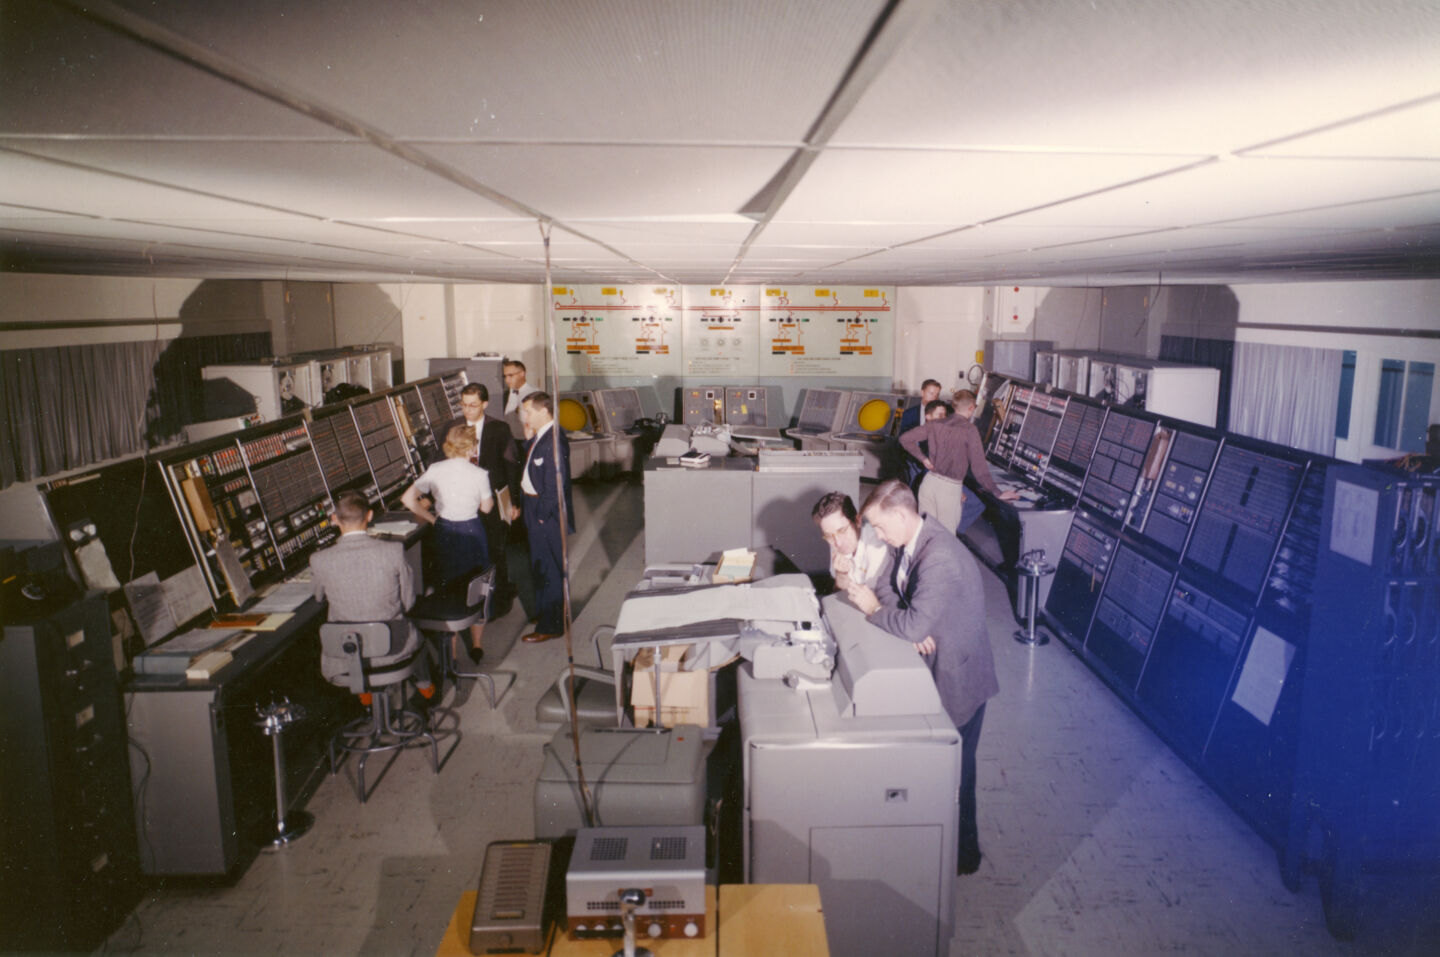 Ас эвм. Компьютер IBM an/FSQ-7. АСУ СССР. АСУ ЭВМ. Командно вычислительный центр.